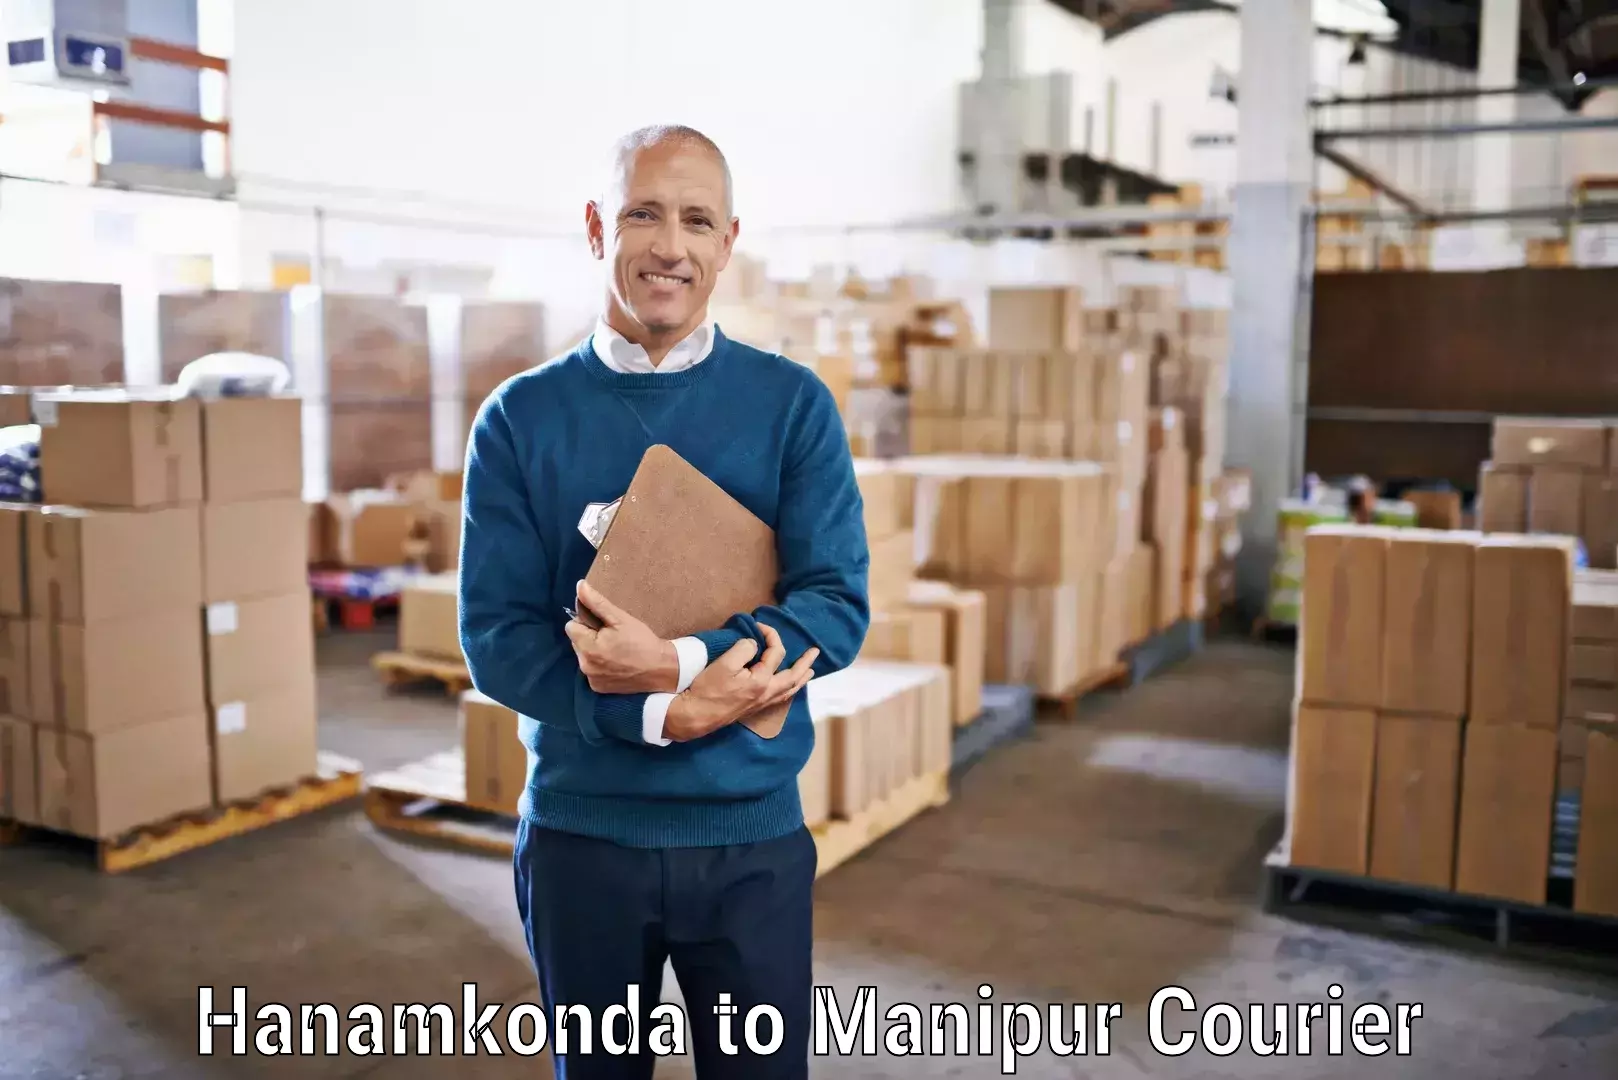 Courier service booking Hanamkonda to Moirang